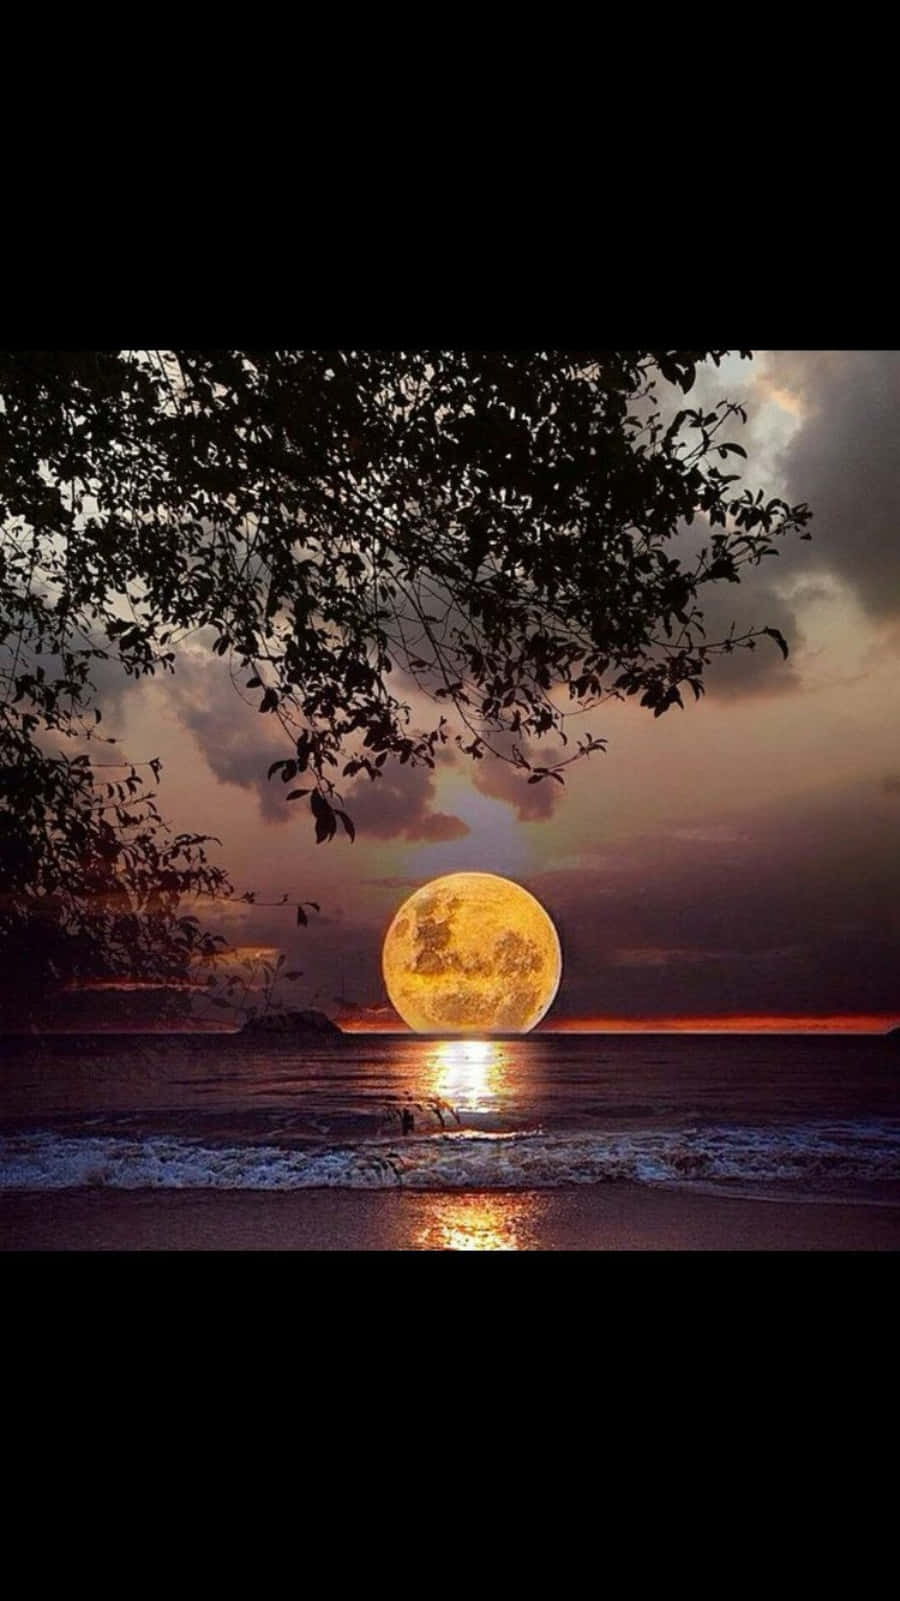 A Wonderful Sight - A Beautiful Moon Tonight